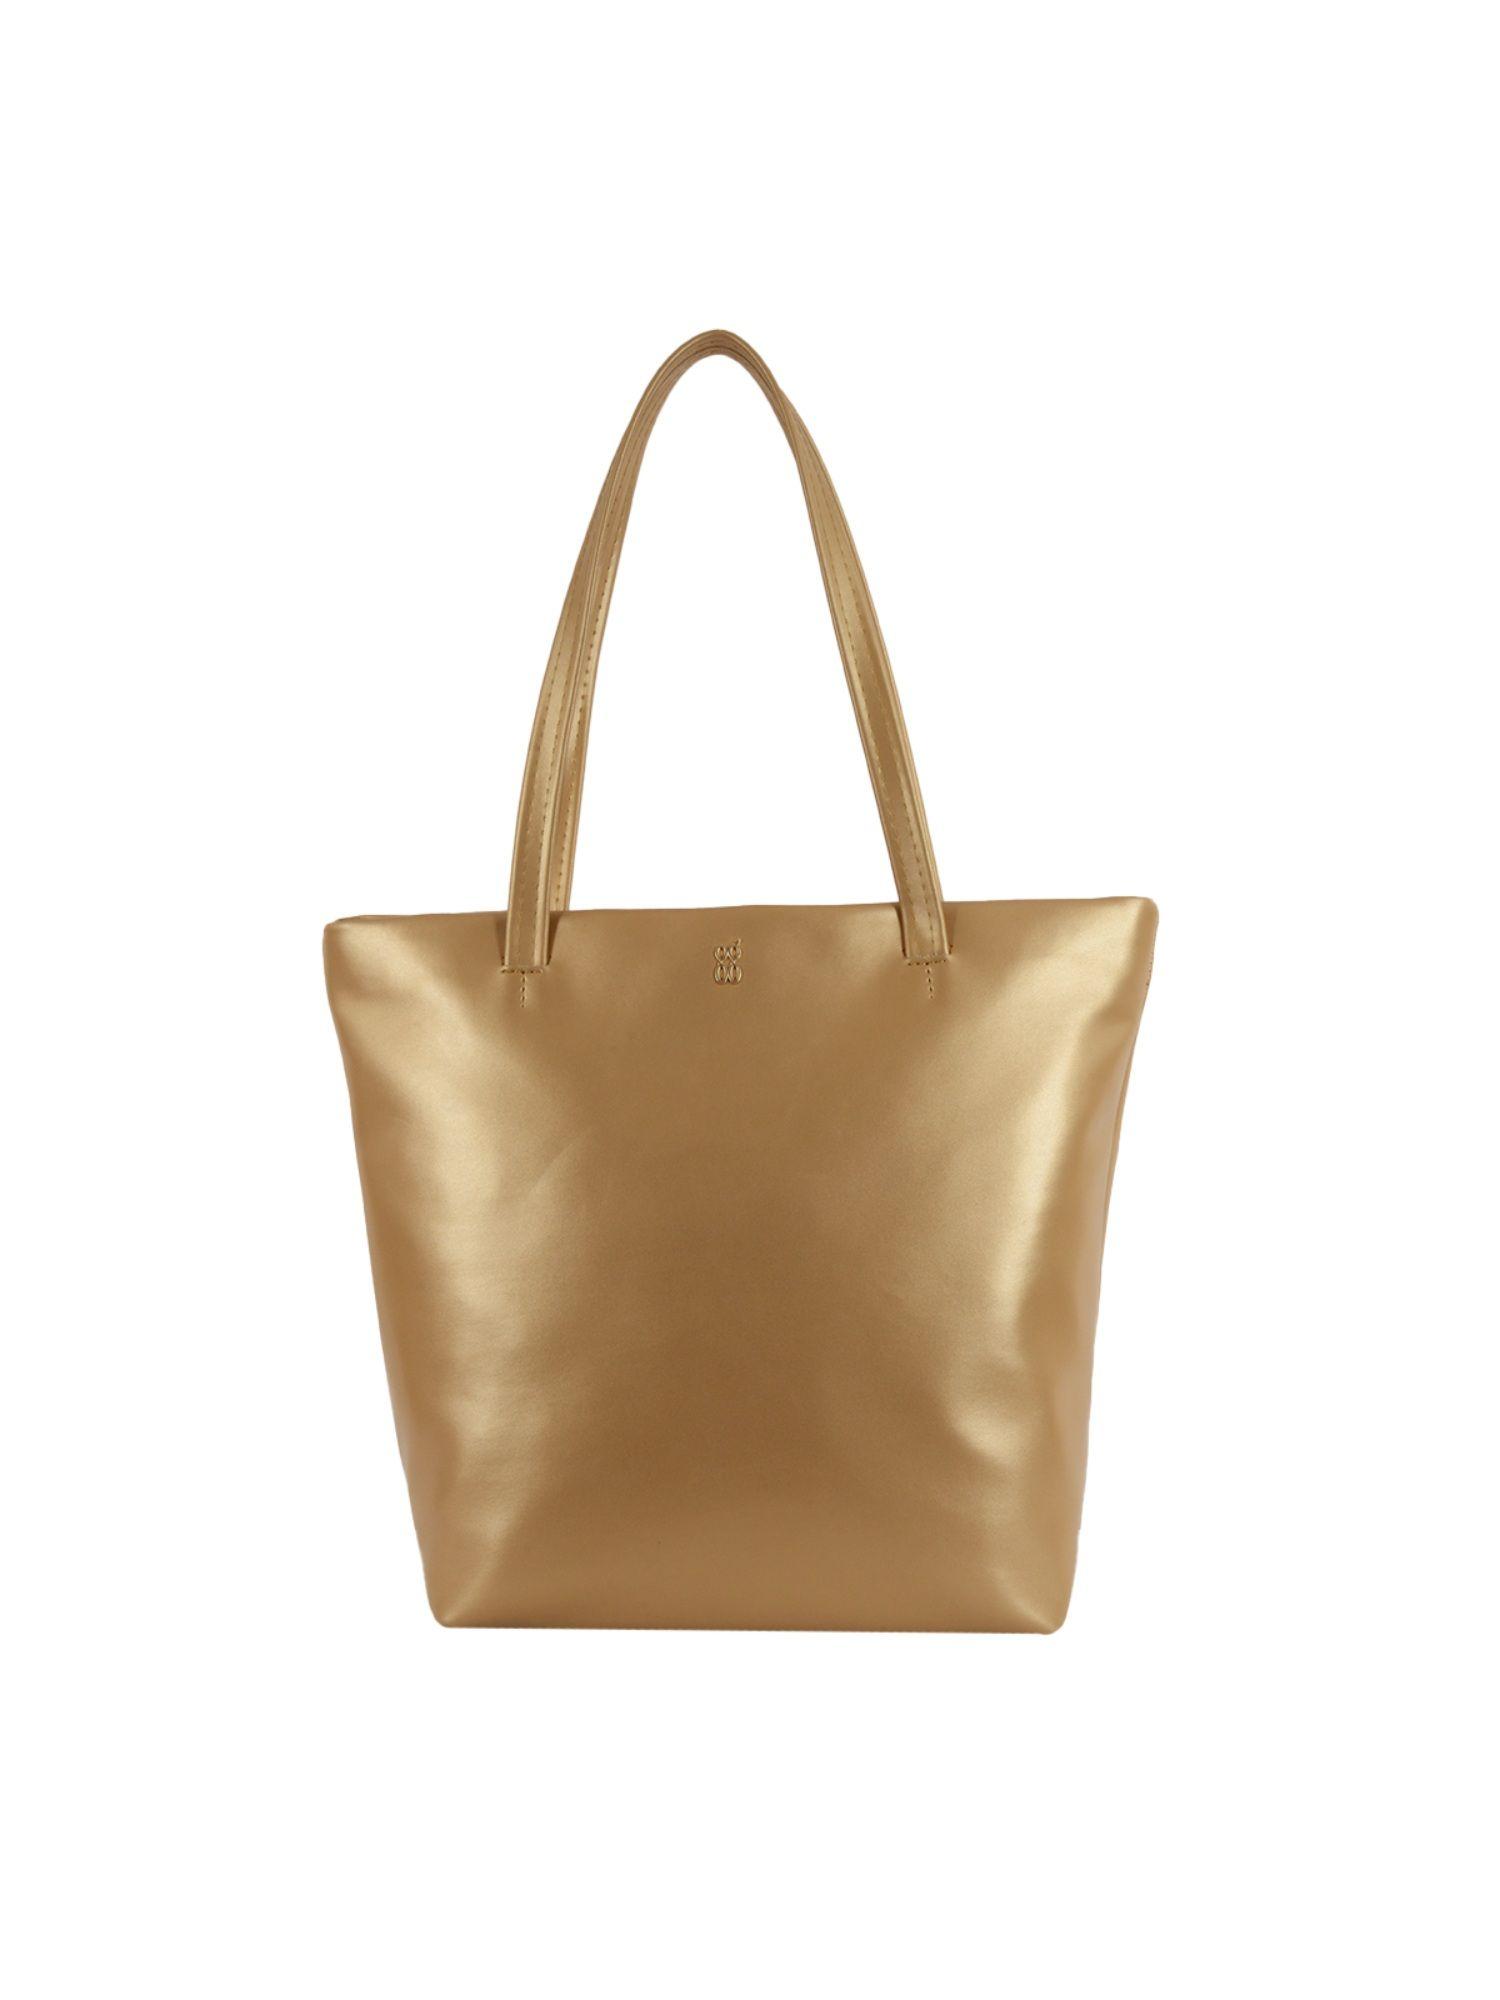 egyt-gold-tote-handbag-(l)